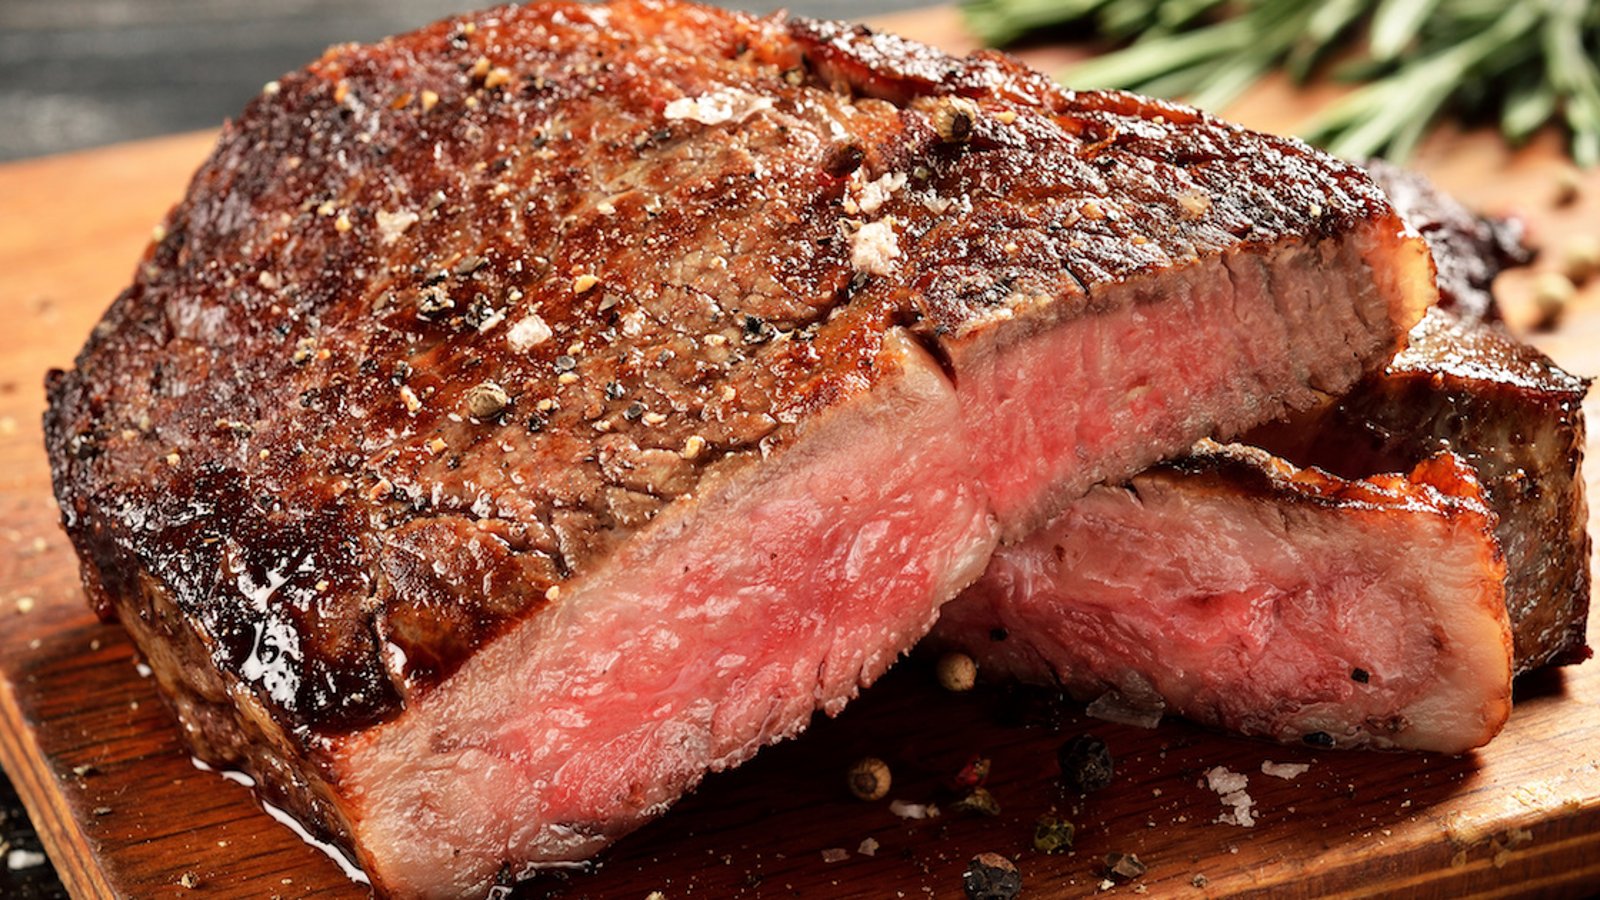 Selon une vaste étude, réduire sa consommation de viande fait diminuer les risques de cancer